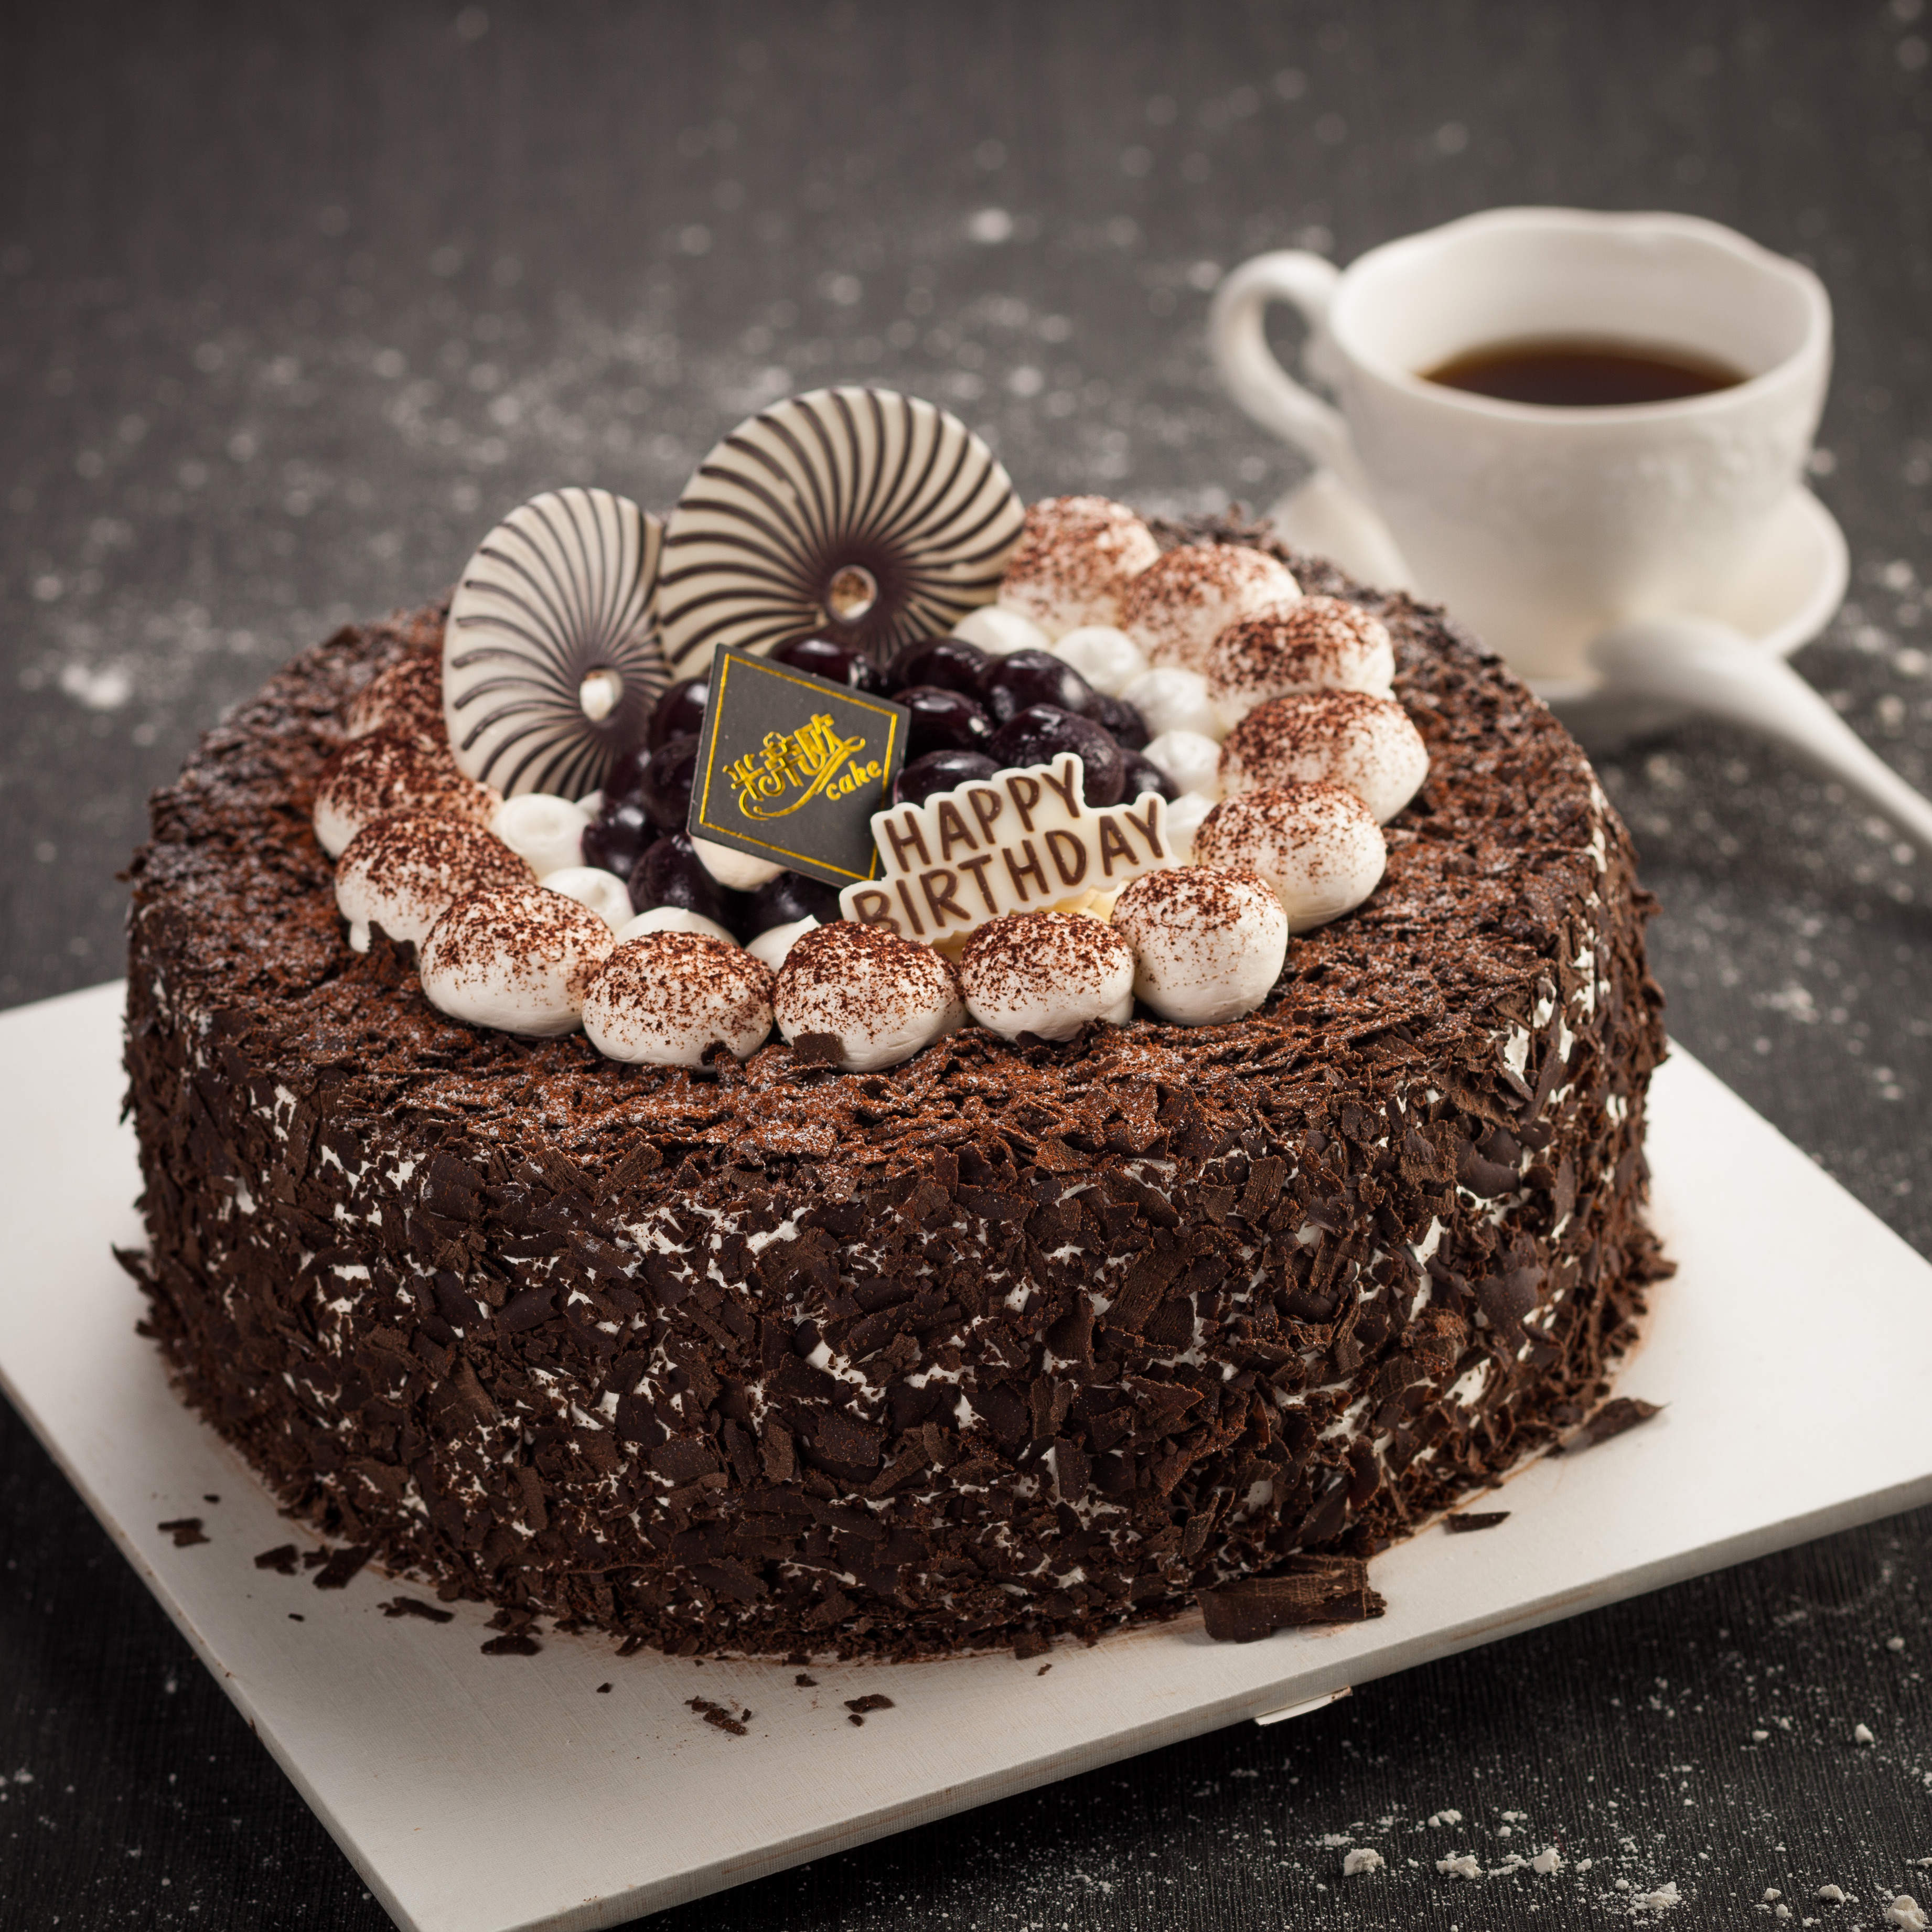 原来名气很大的蛋糕做起来却很简单------黑森林蛋糕_黑森林蛋糕_sunshinewinnie的日志_美食天下